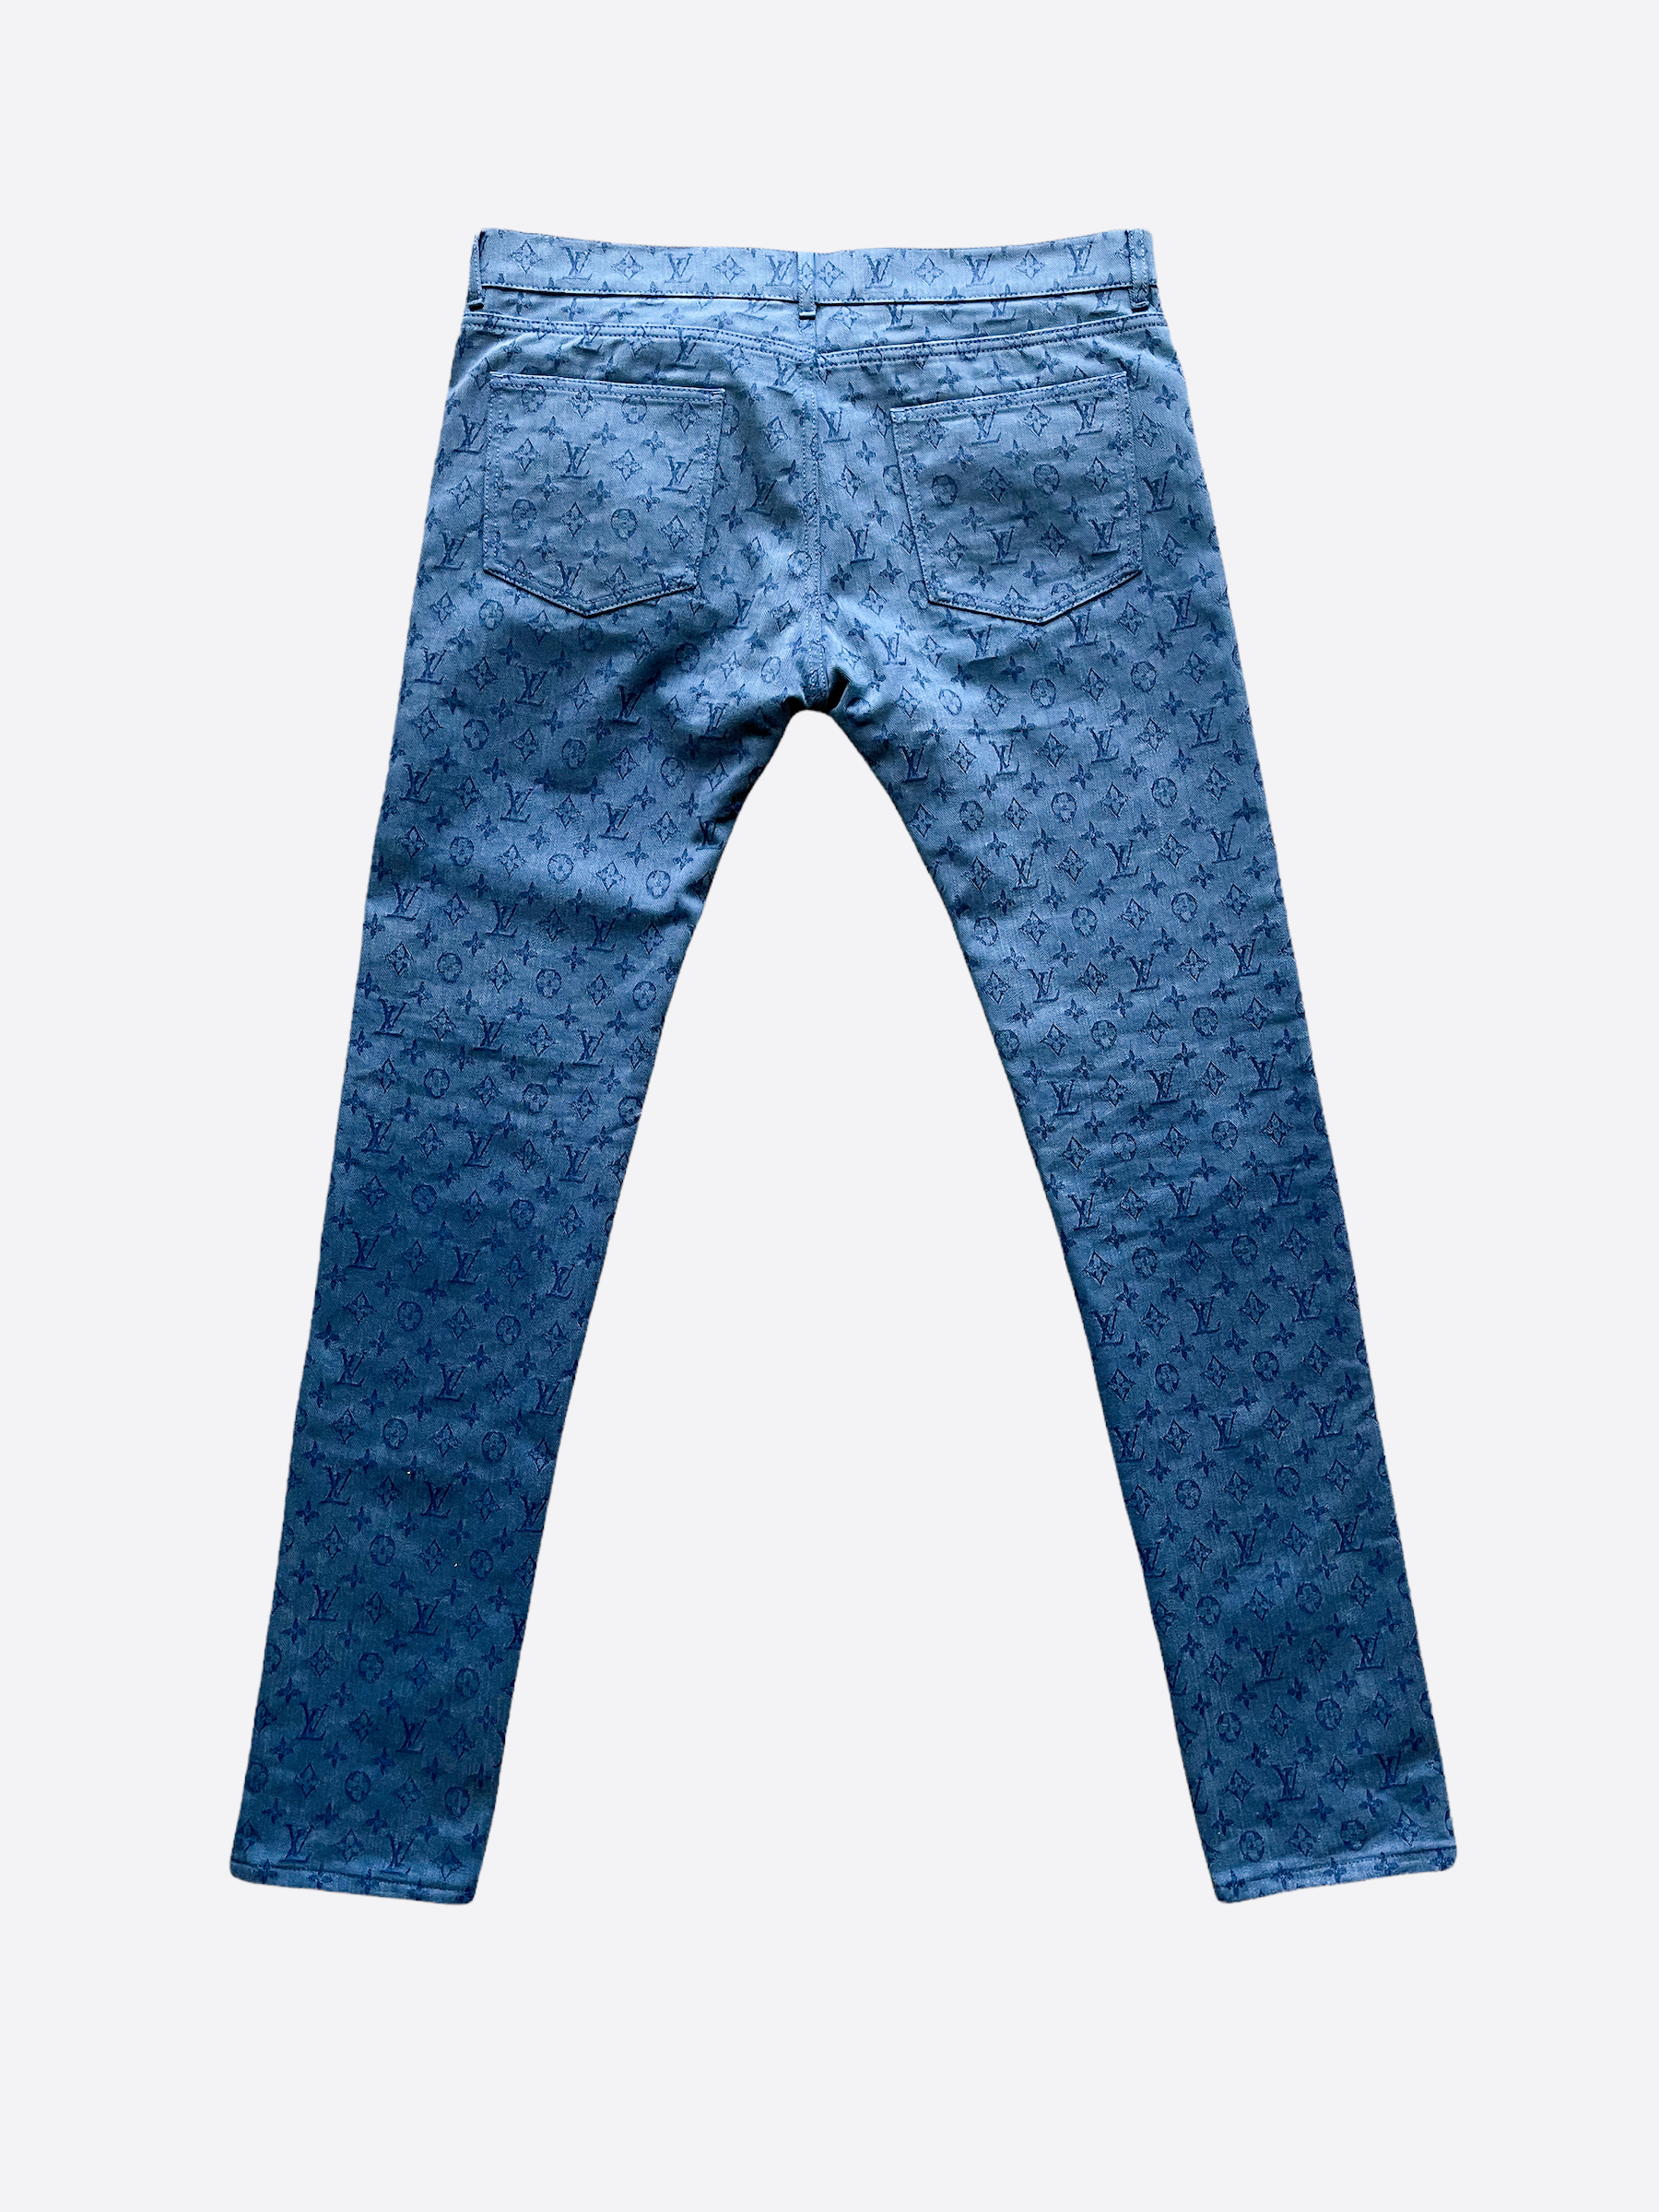 Louis Vuitton Monogram Printed Denim Pants Indigo. Size 38